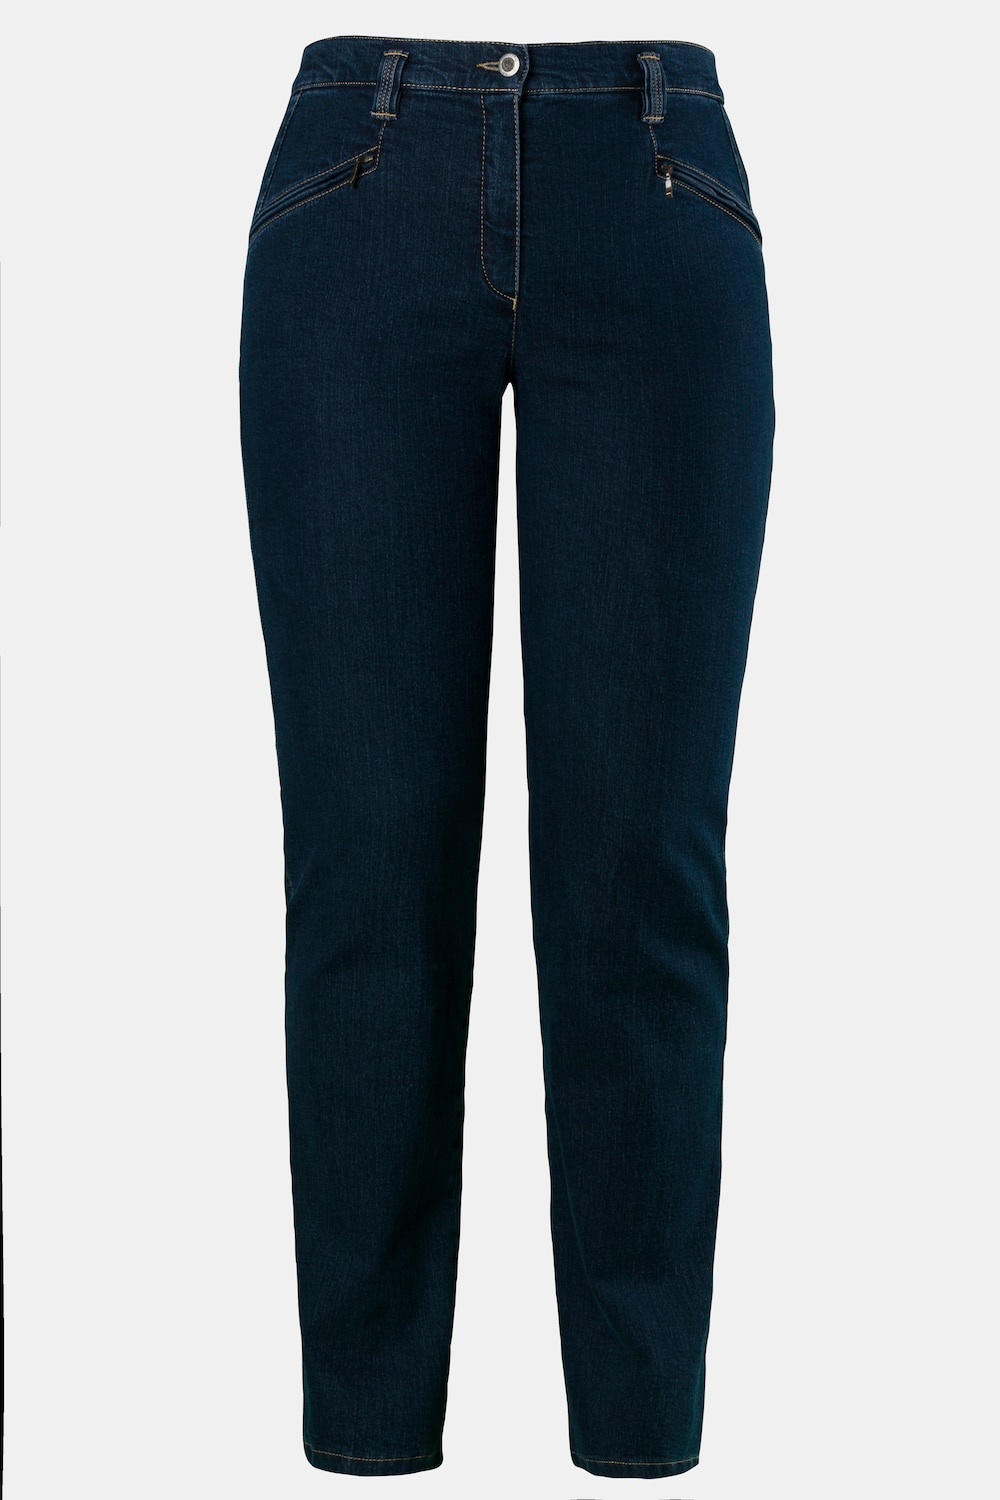 Grote Maten jeans mony, Dames, blauw, Maat: 21, Katoen/Synthetische vezels, Ulla Popken